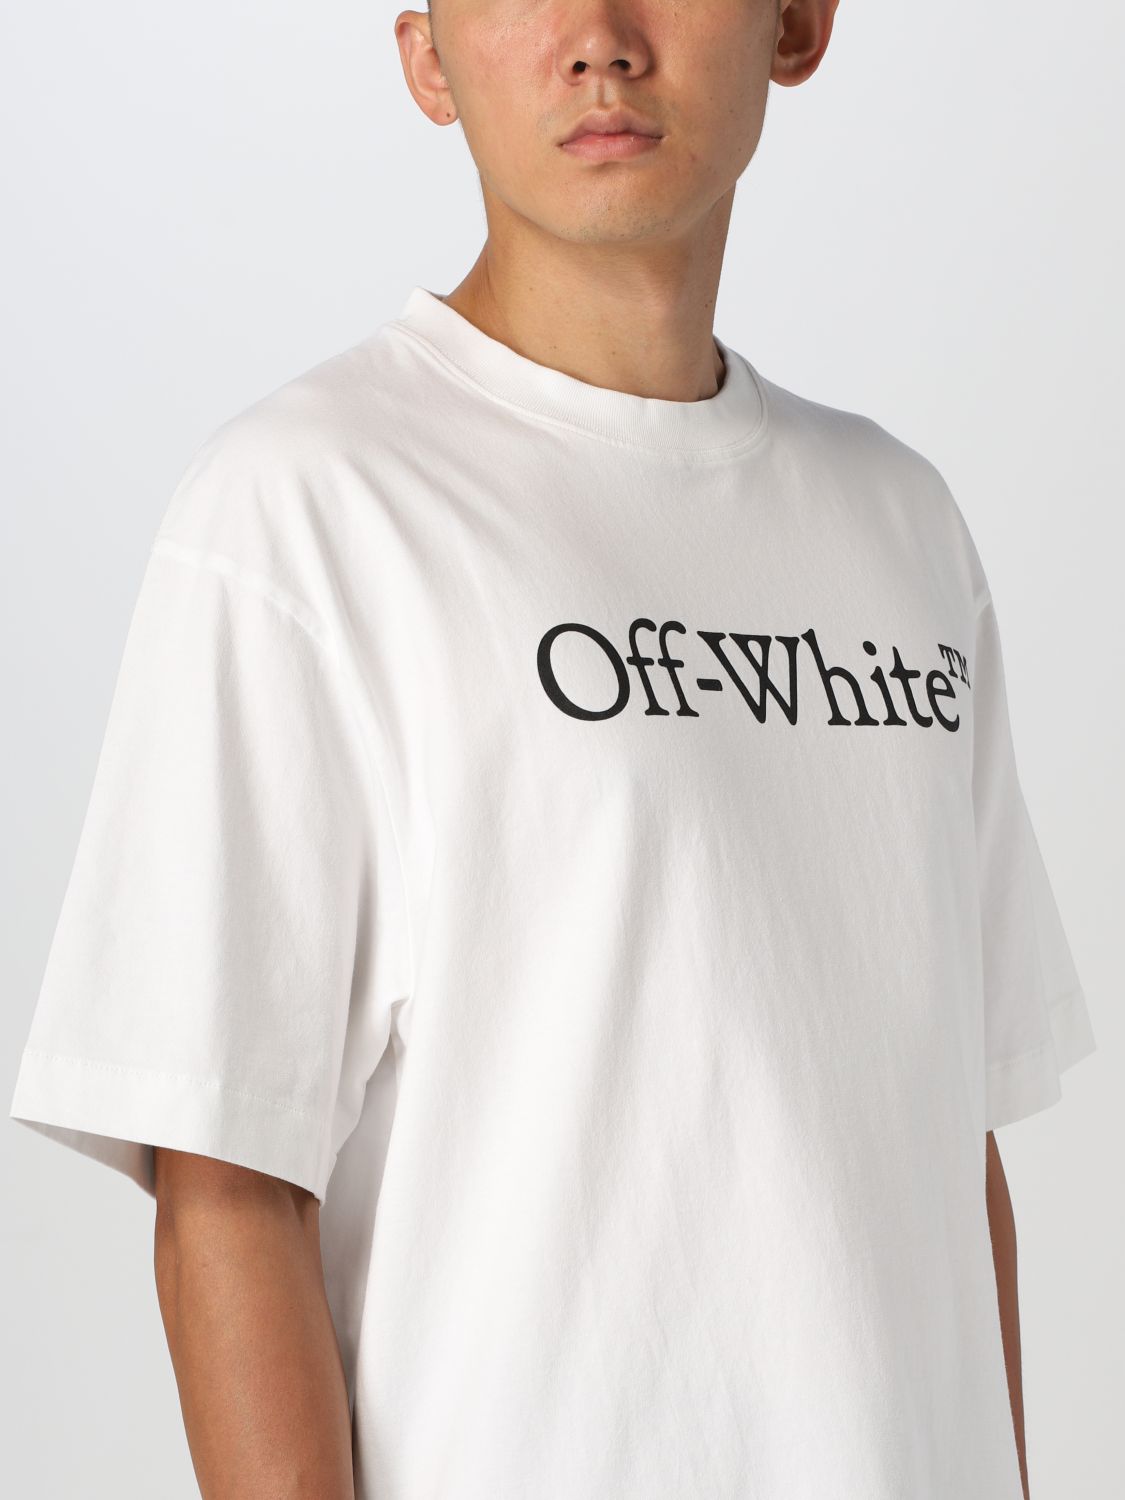 オフホワイト  OMAA120S22JER003 グラフィックデザインTシャツ  メンズ XXL